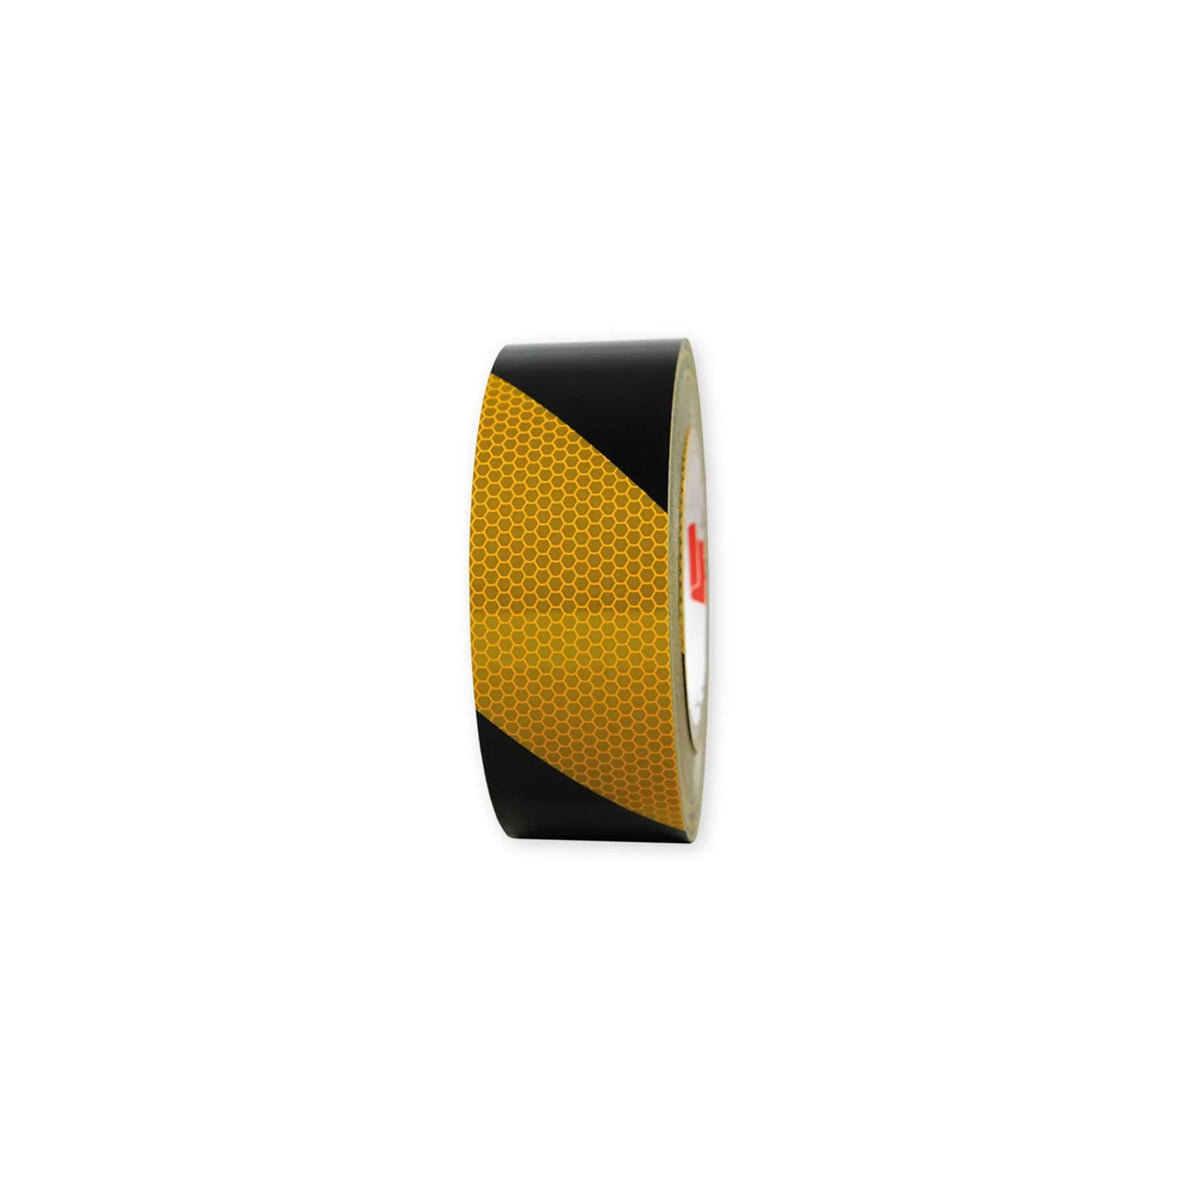 Warnmarkierungsband R2, für Fahrzeuge, R2, gelb-schwarz, 25 m x 50 mm, rechtsweisend